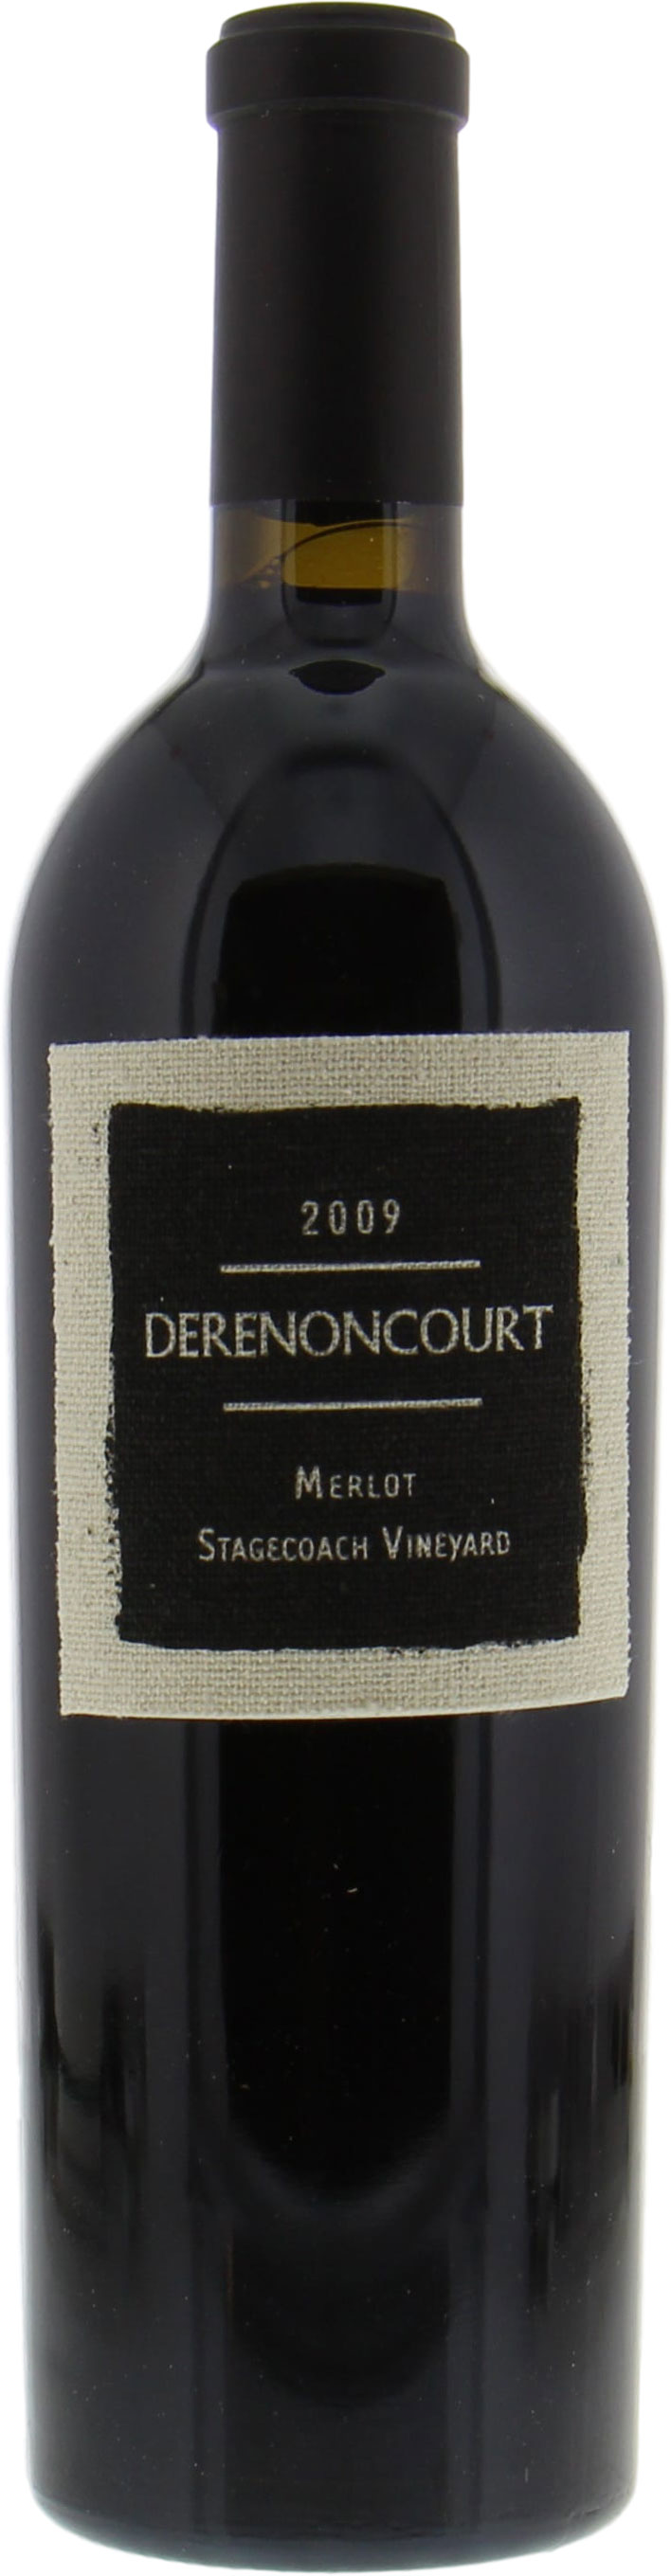 Derenoncourt  - Merlot Stagecoach Vineyard 2009